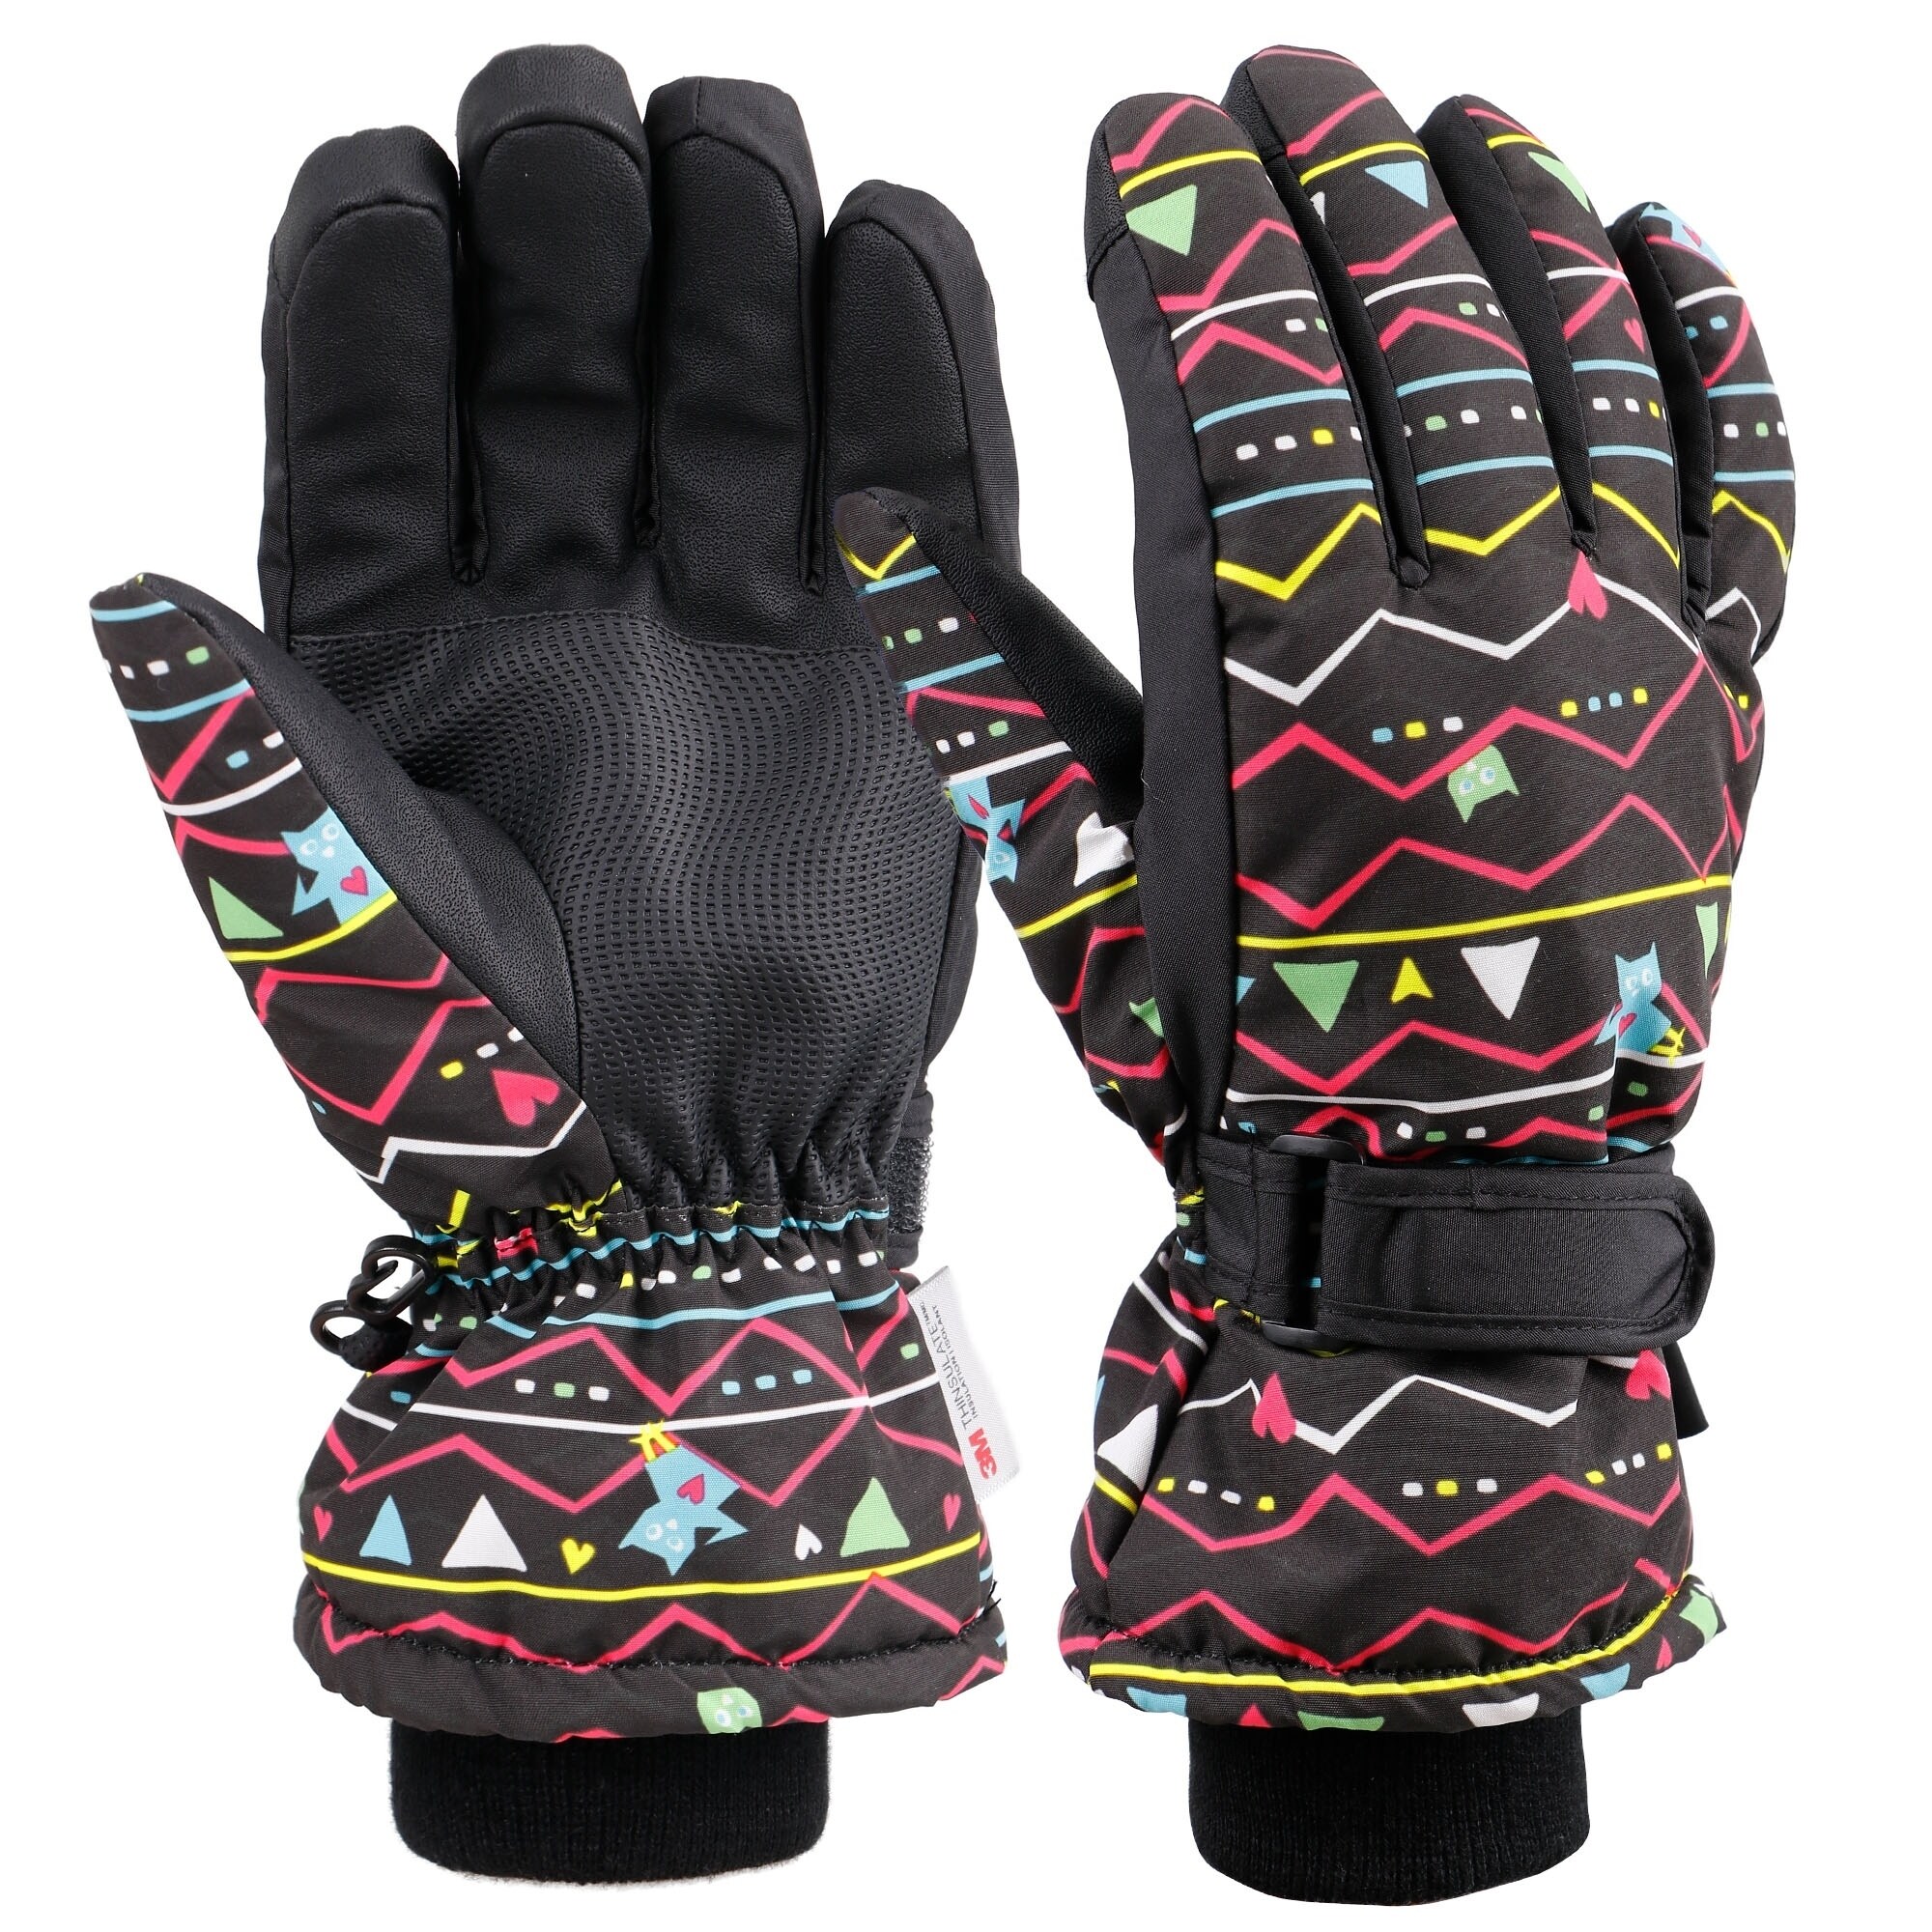 snow ski gloves